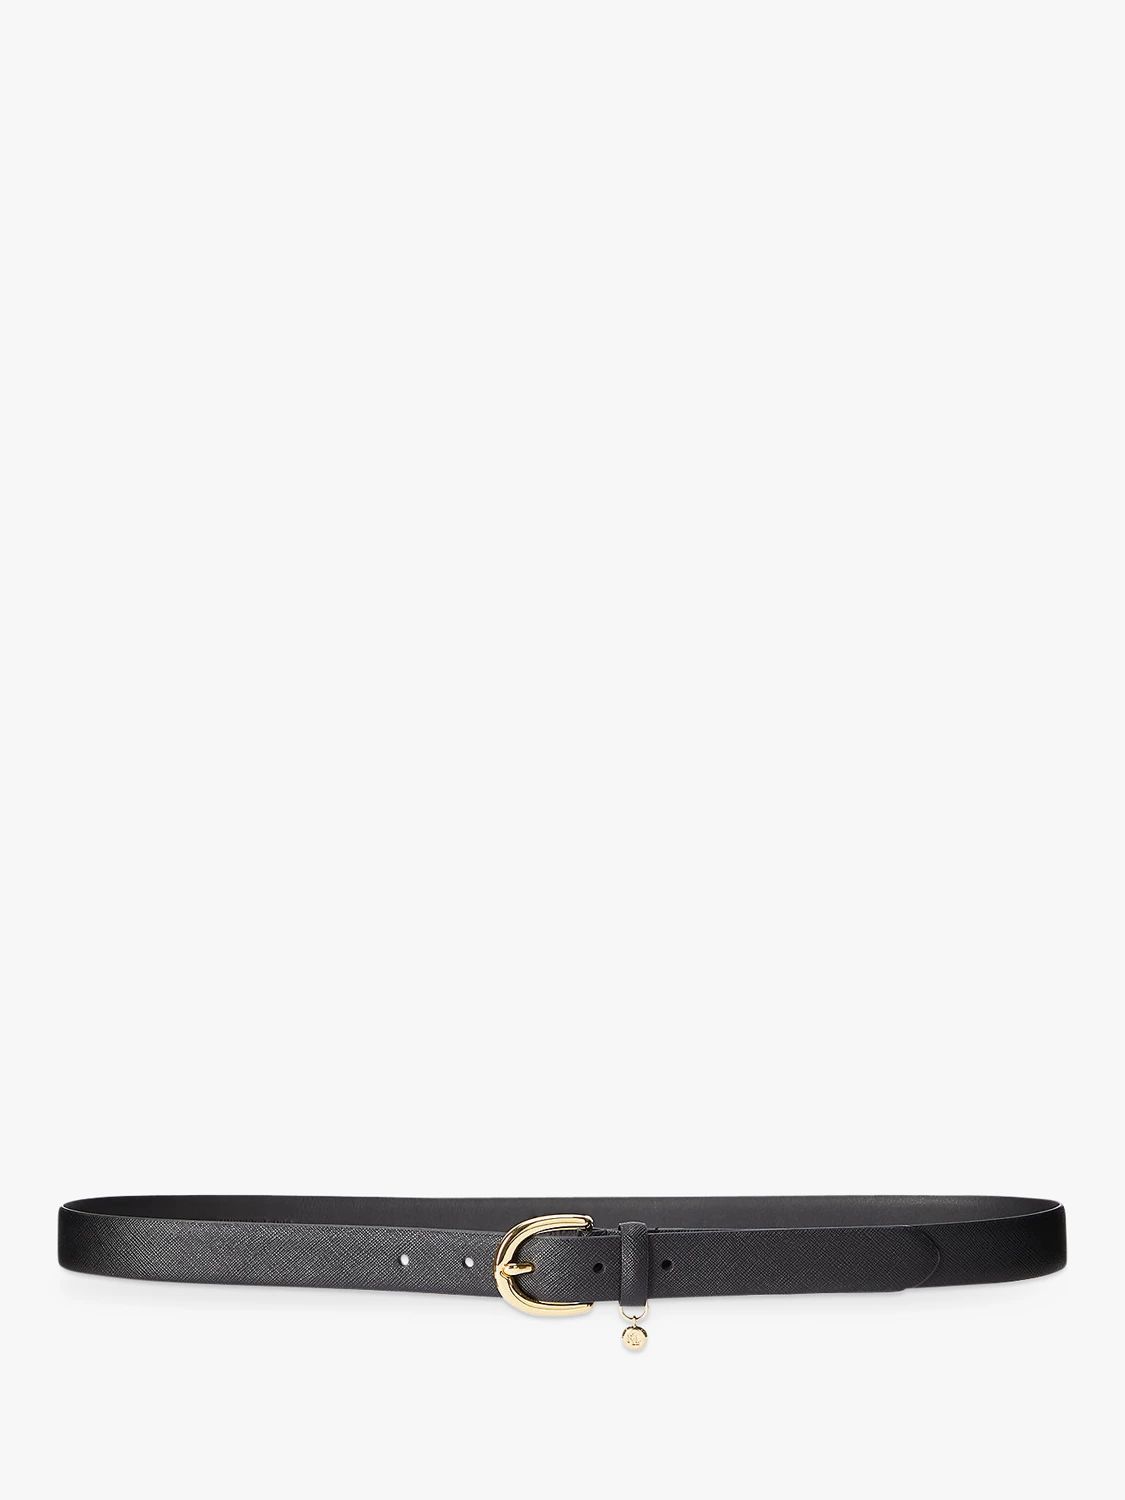 Lauren Ralph Lauren Cross Hatch Leather Belt, Black | John Lewis (UK)